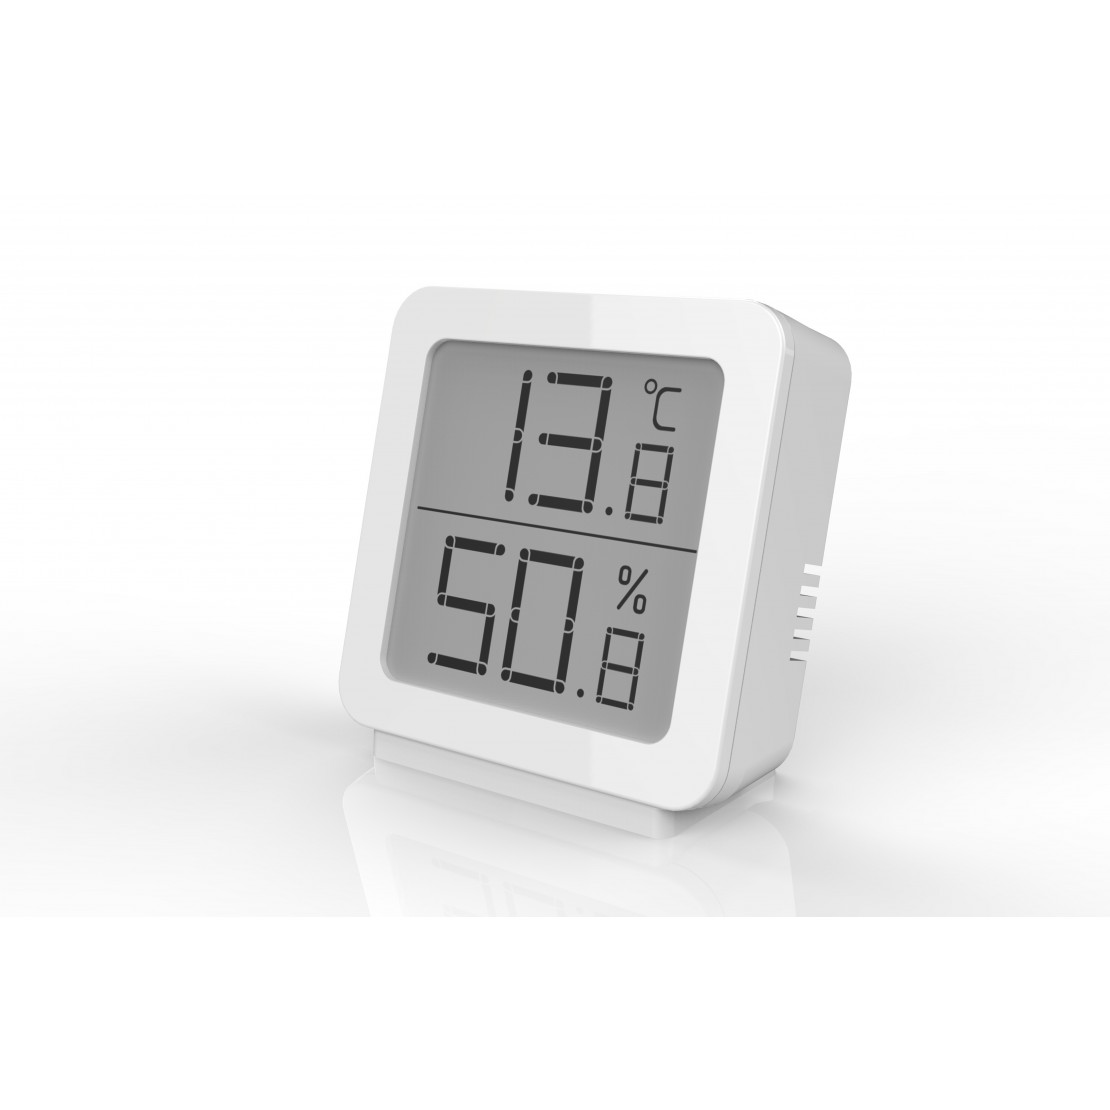 Thermomètre intérieur sans fil avec hygromètre